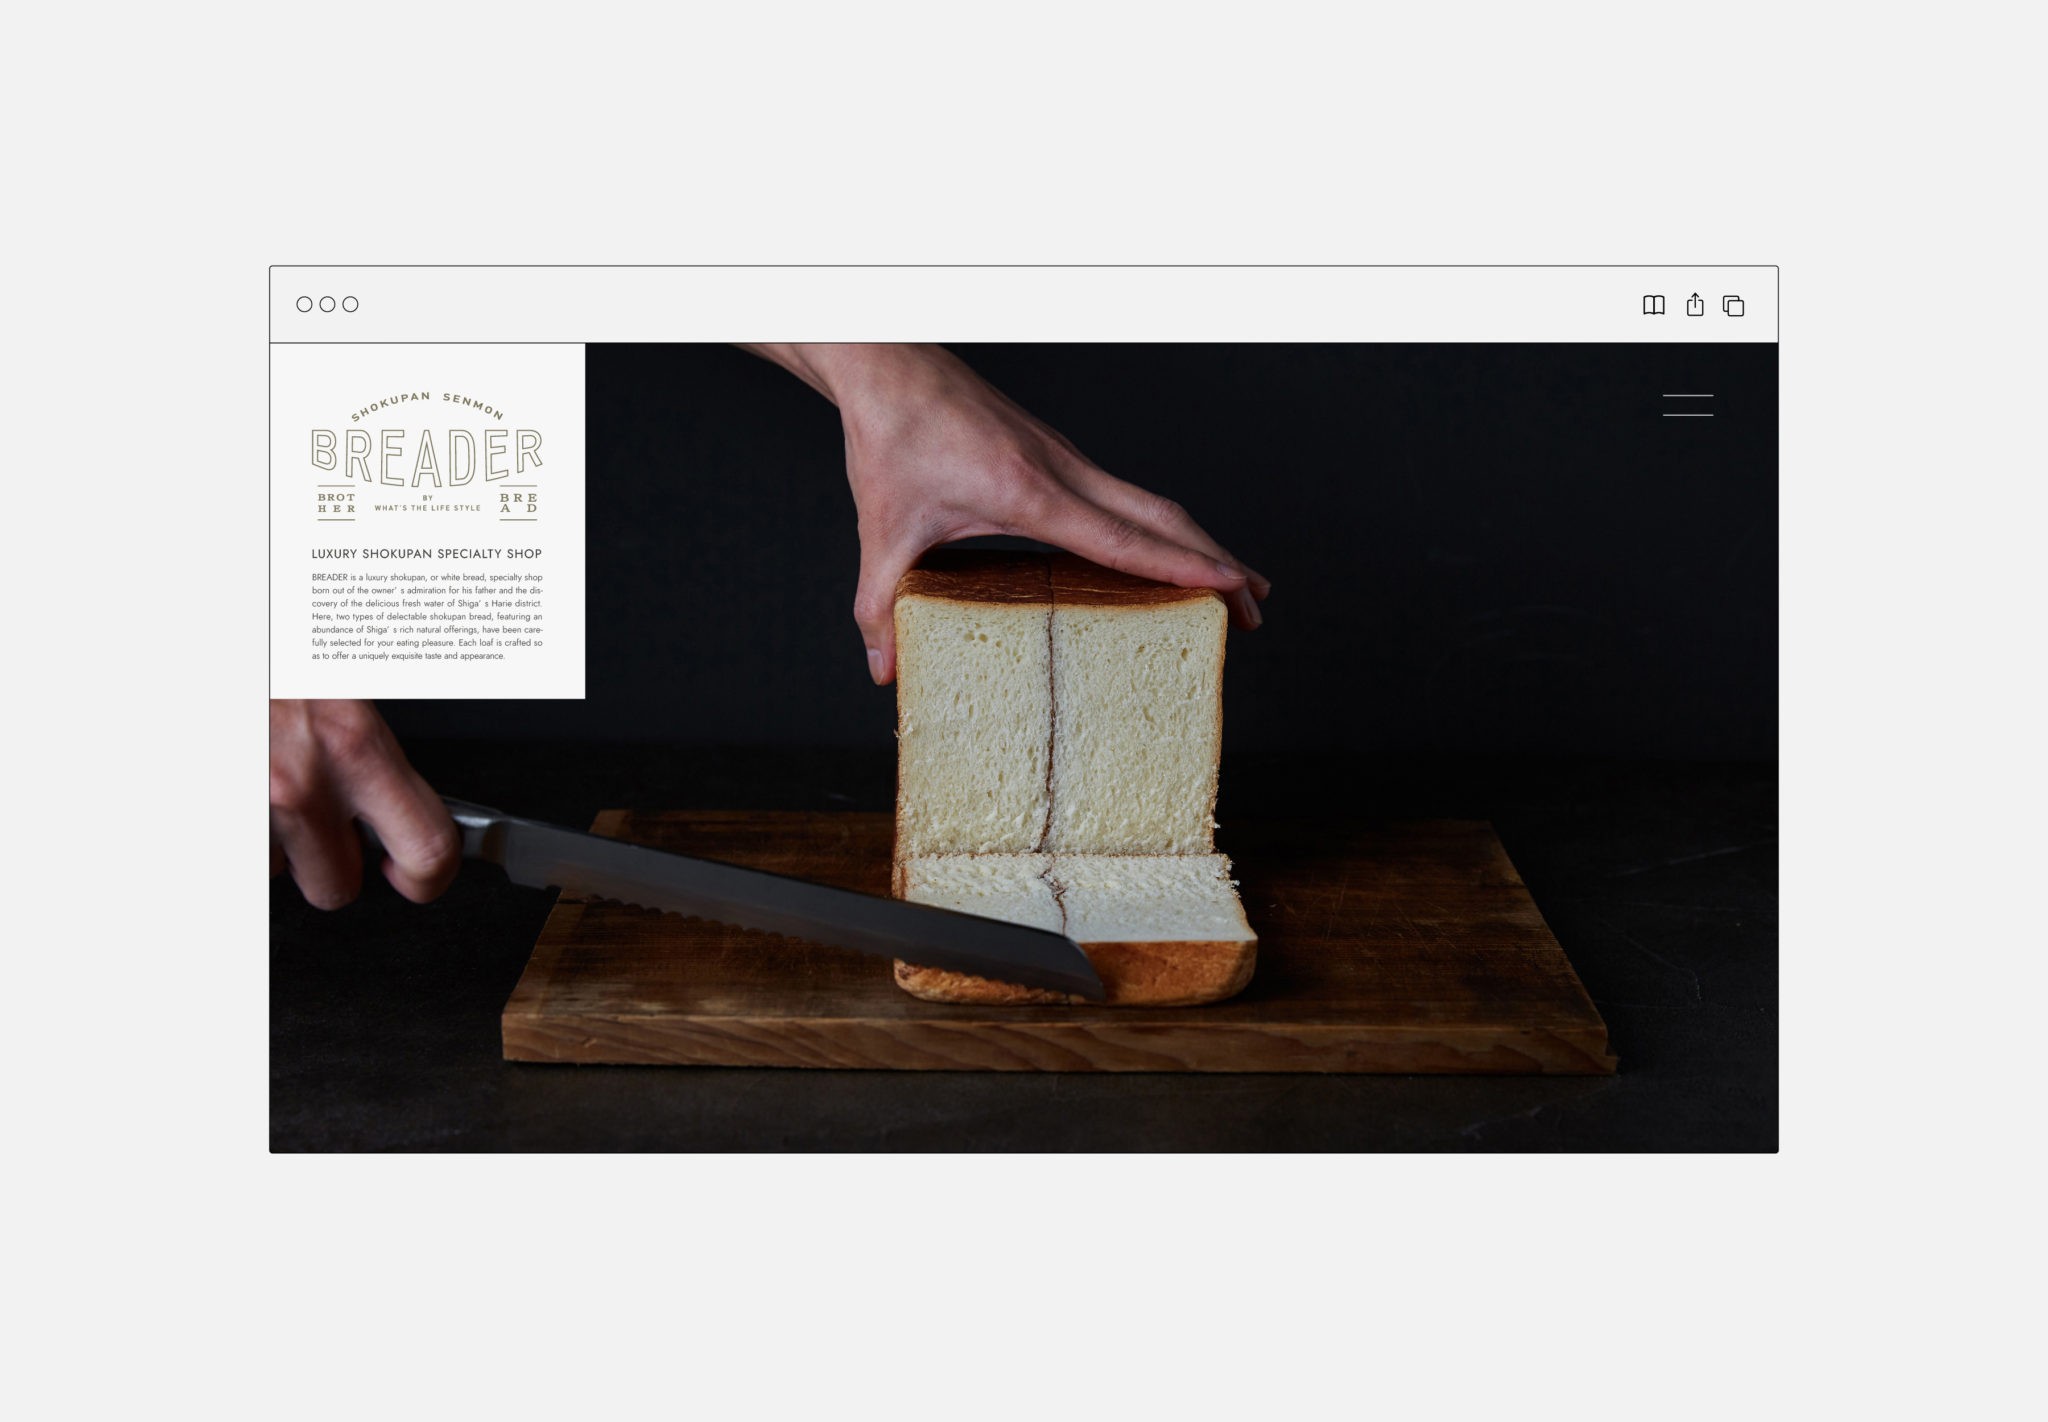 高級食パン専門店BREADER様のホームページを制作しました。